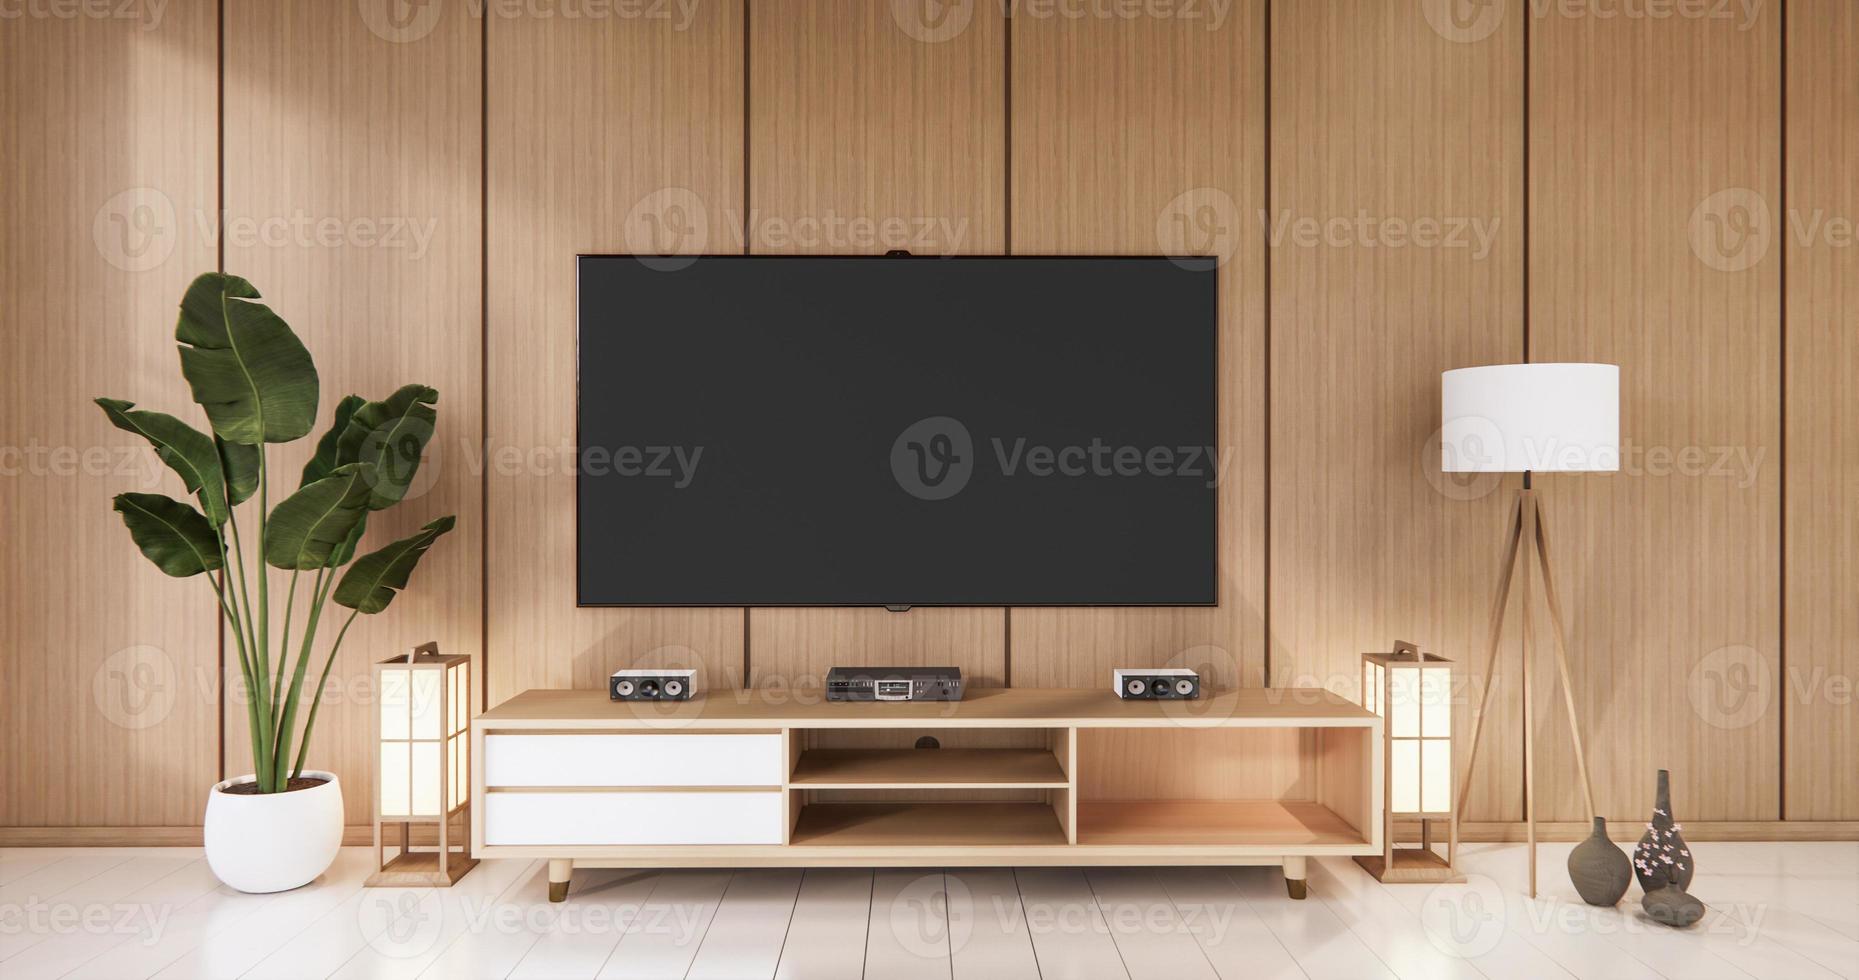 TV auf leerem Wandhintergrund und Wand aus Holz japanisches Design im Wohnzimmer-Zen-Stil. 3D-Rendering foto